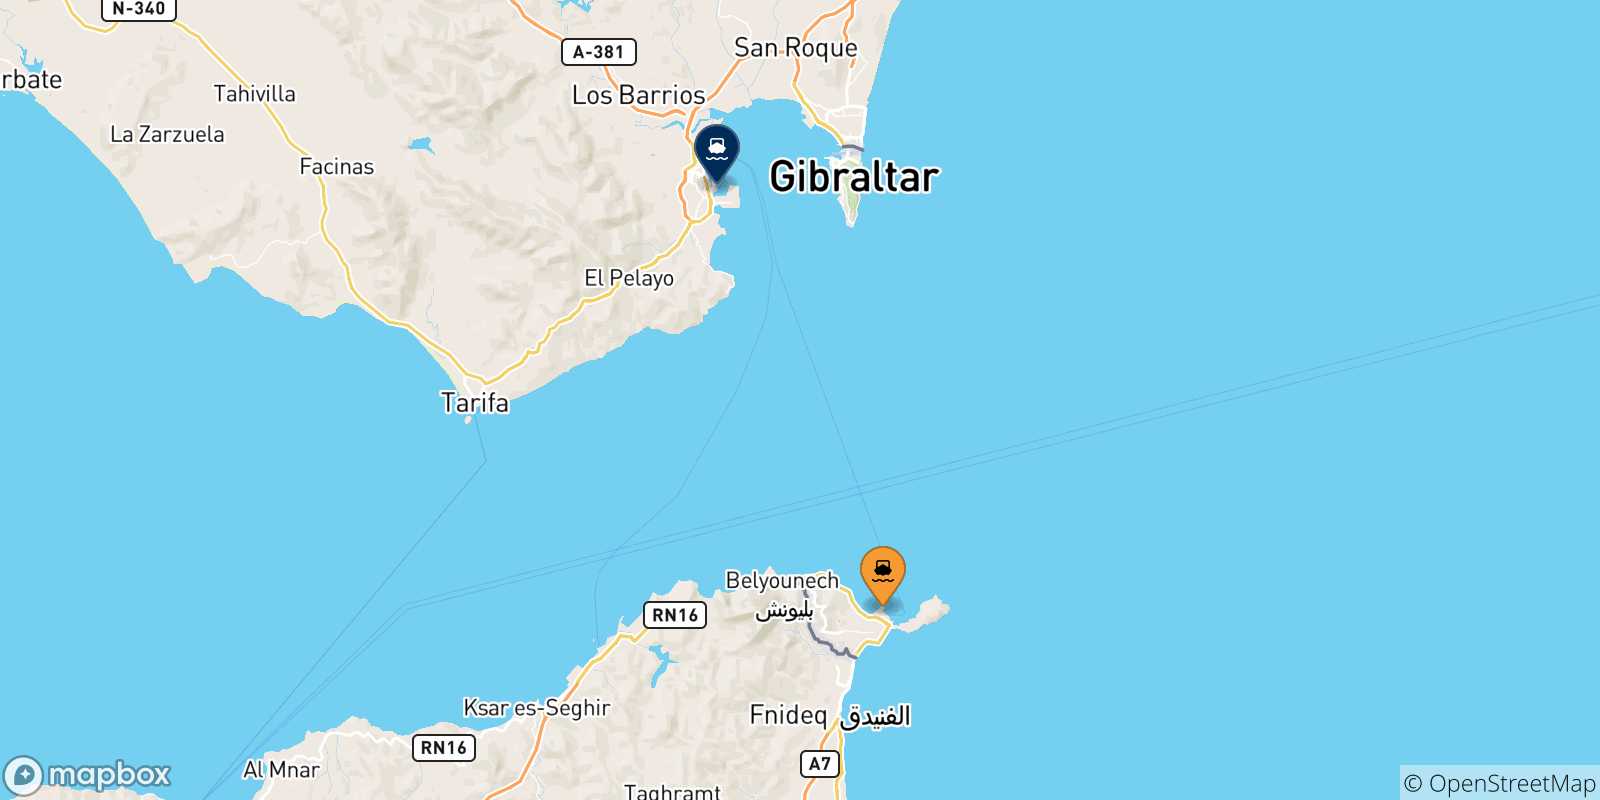 Mappa delle possibili rotte tra la Spagna e Algeciras